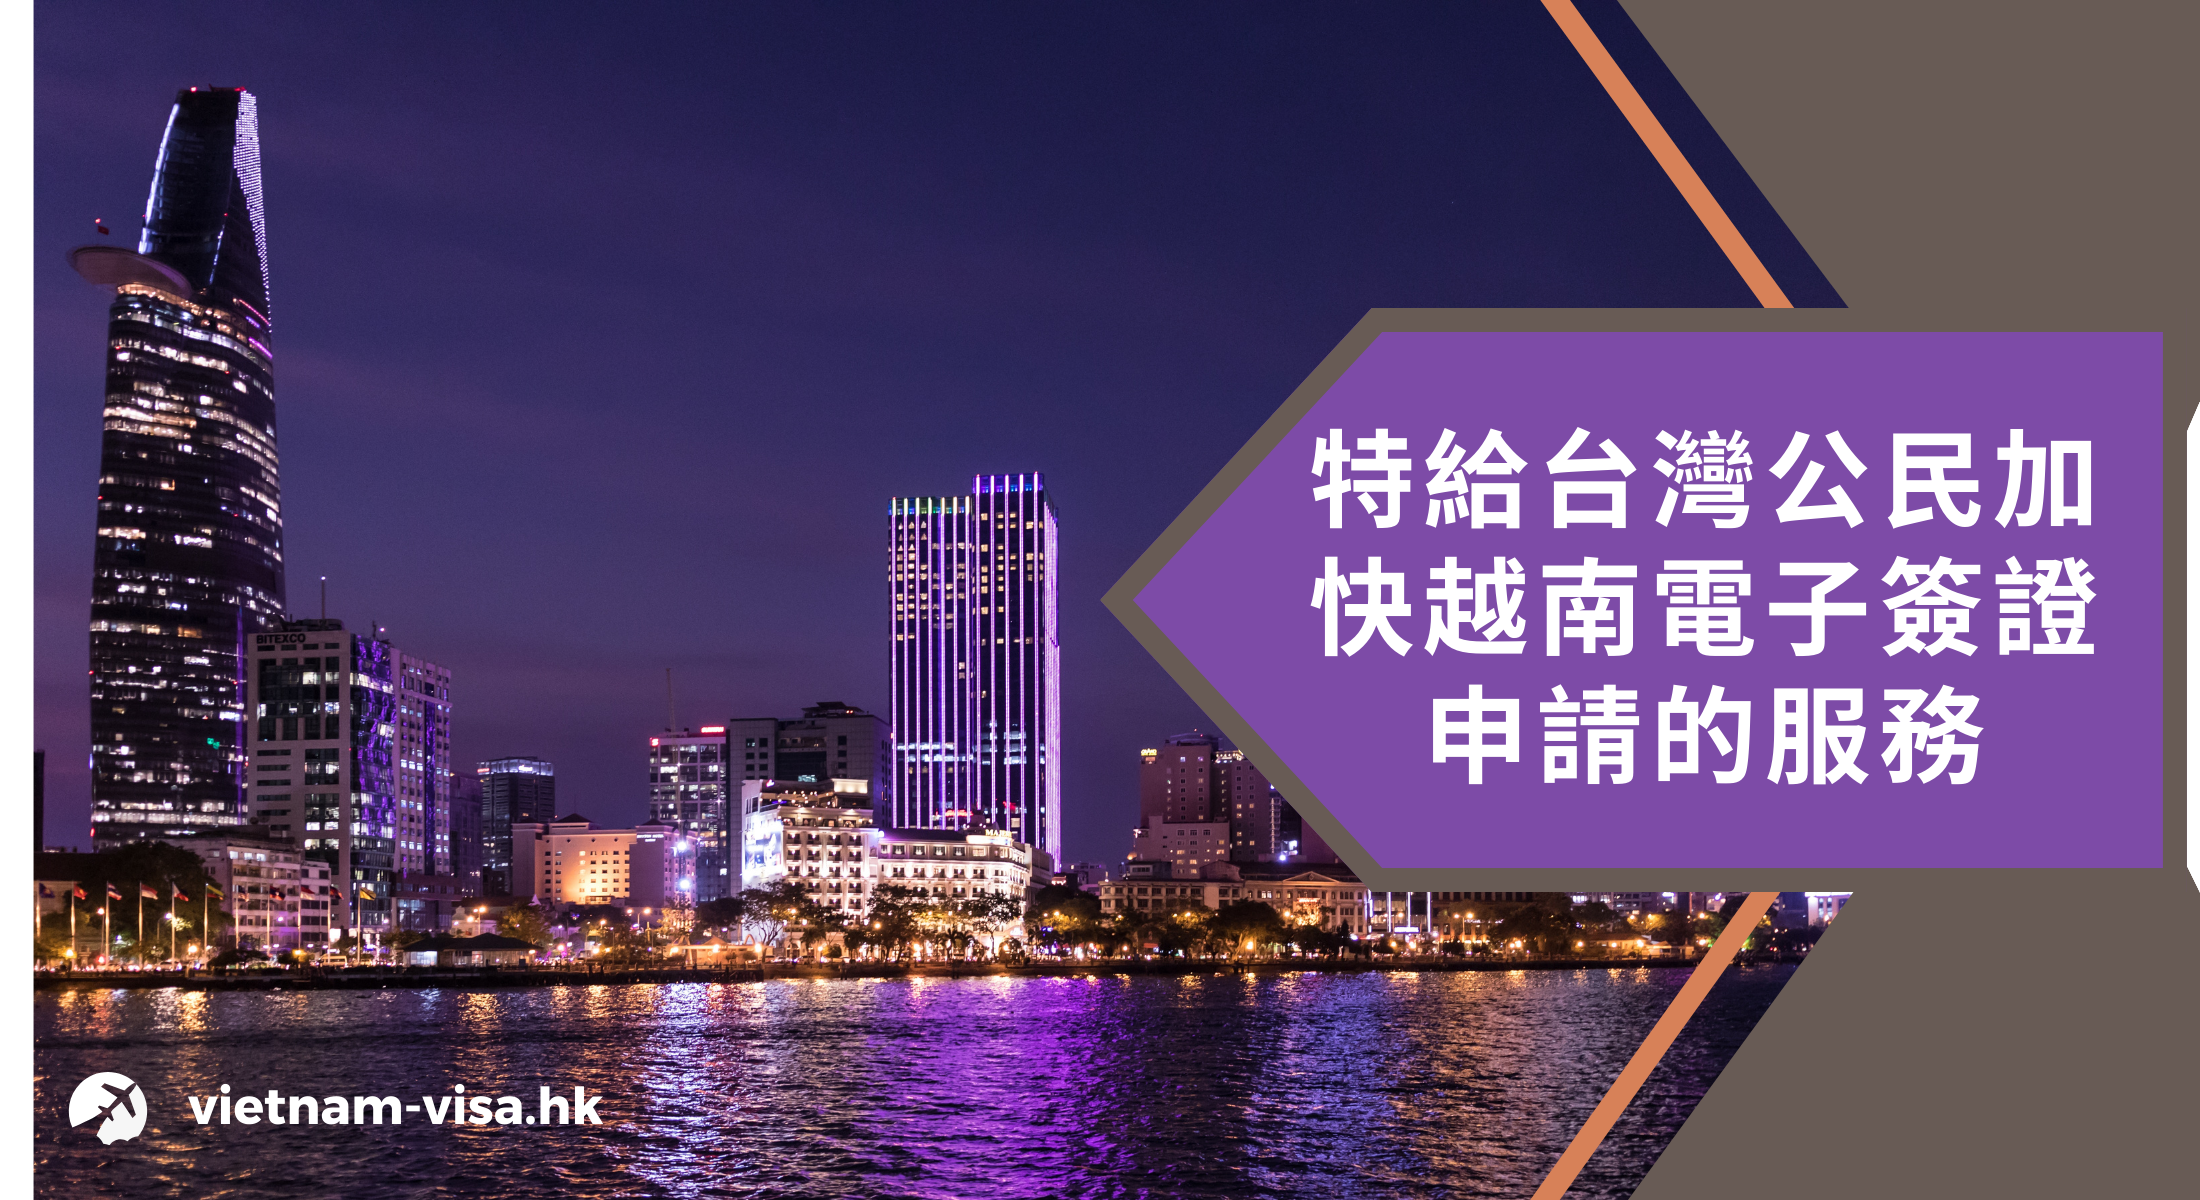 特給台灣公民加快越南電子簽證申請的服務